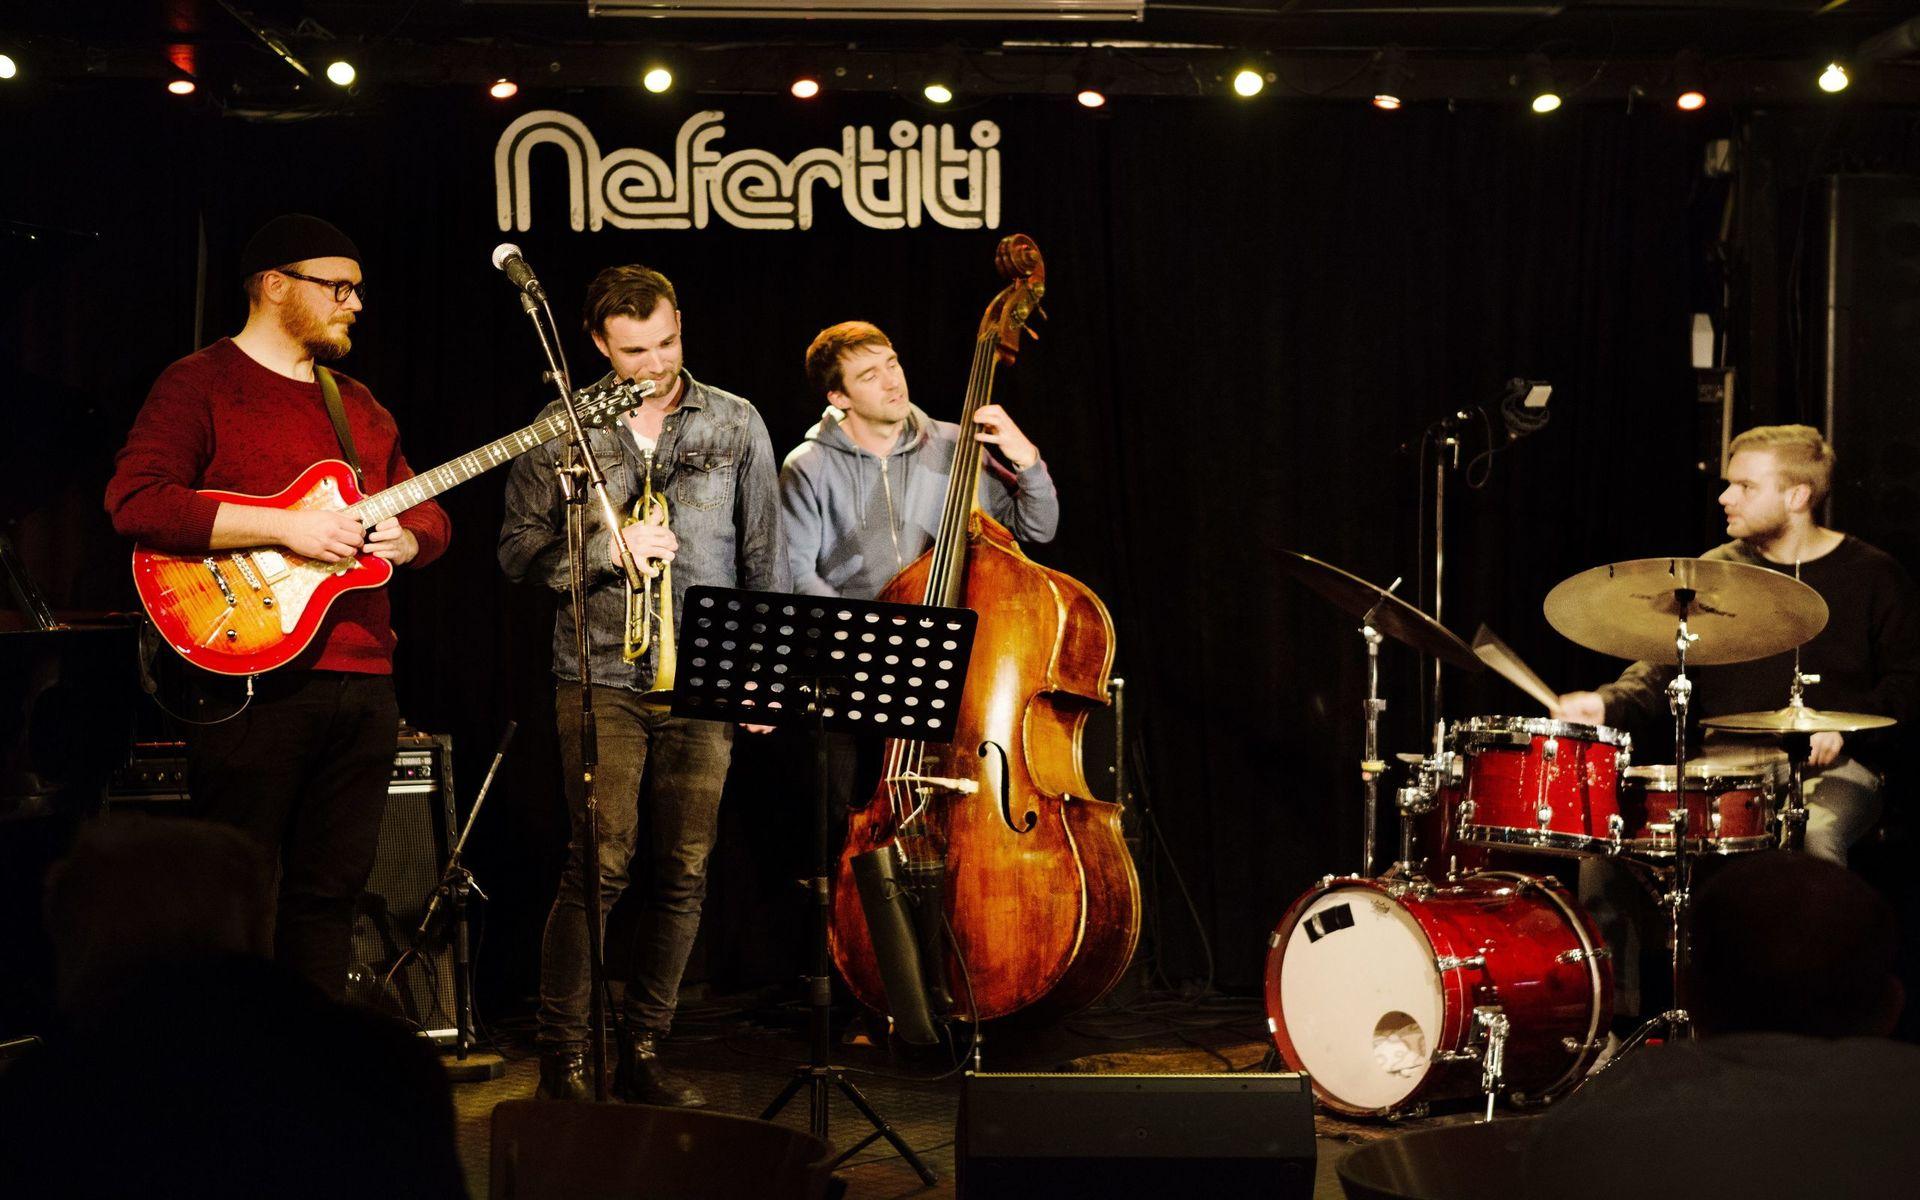 Nefertitis tisdagsklubb Playhouse som kombinerar konsert och jamsession.